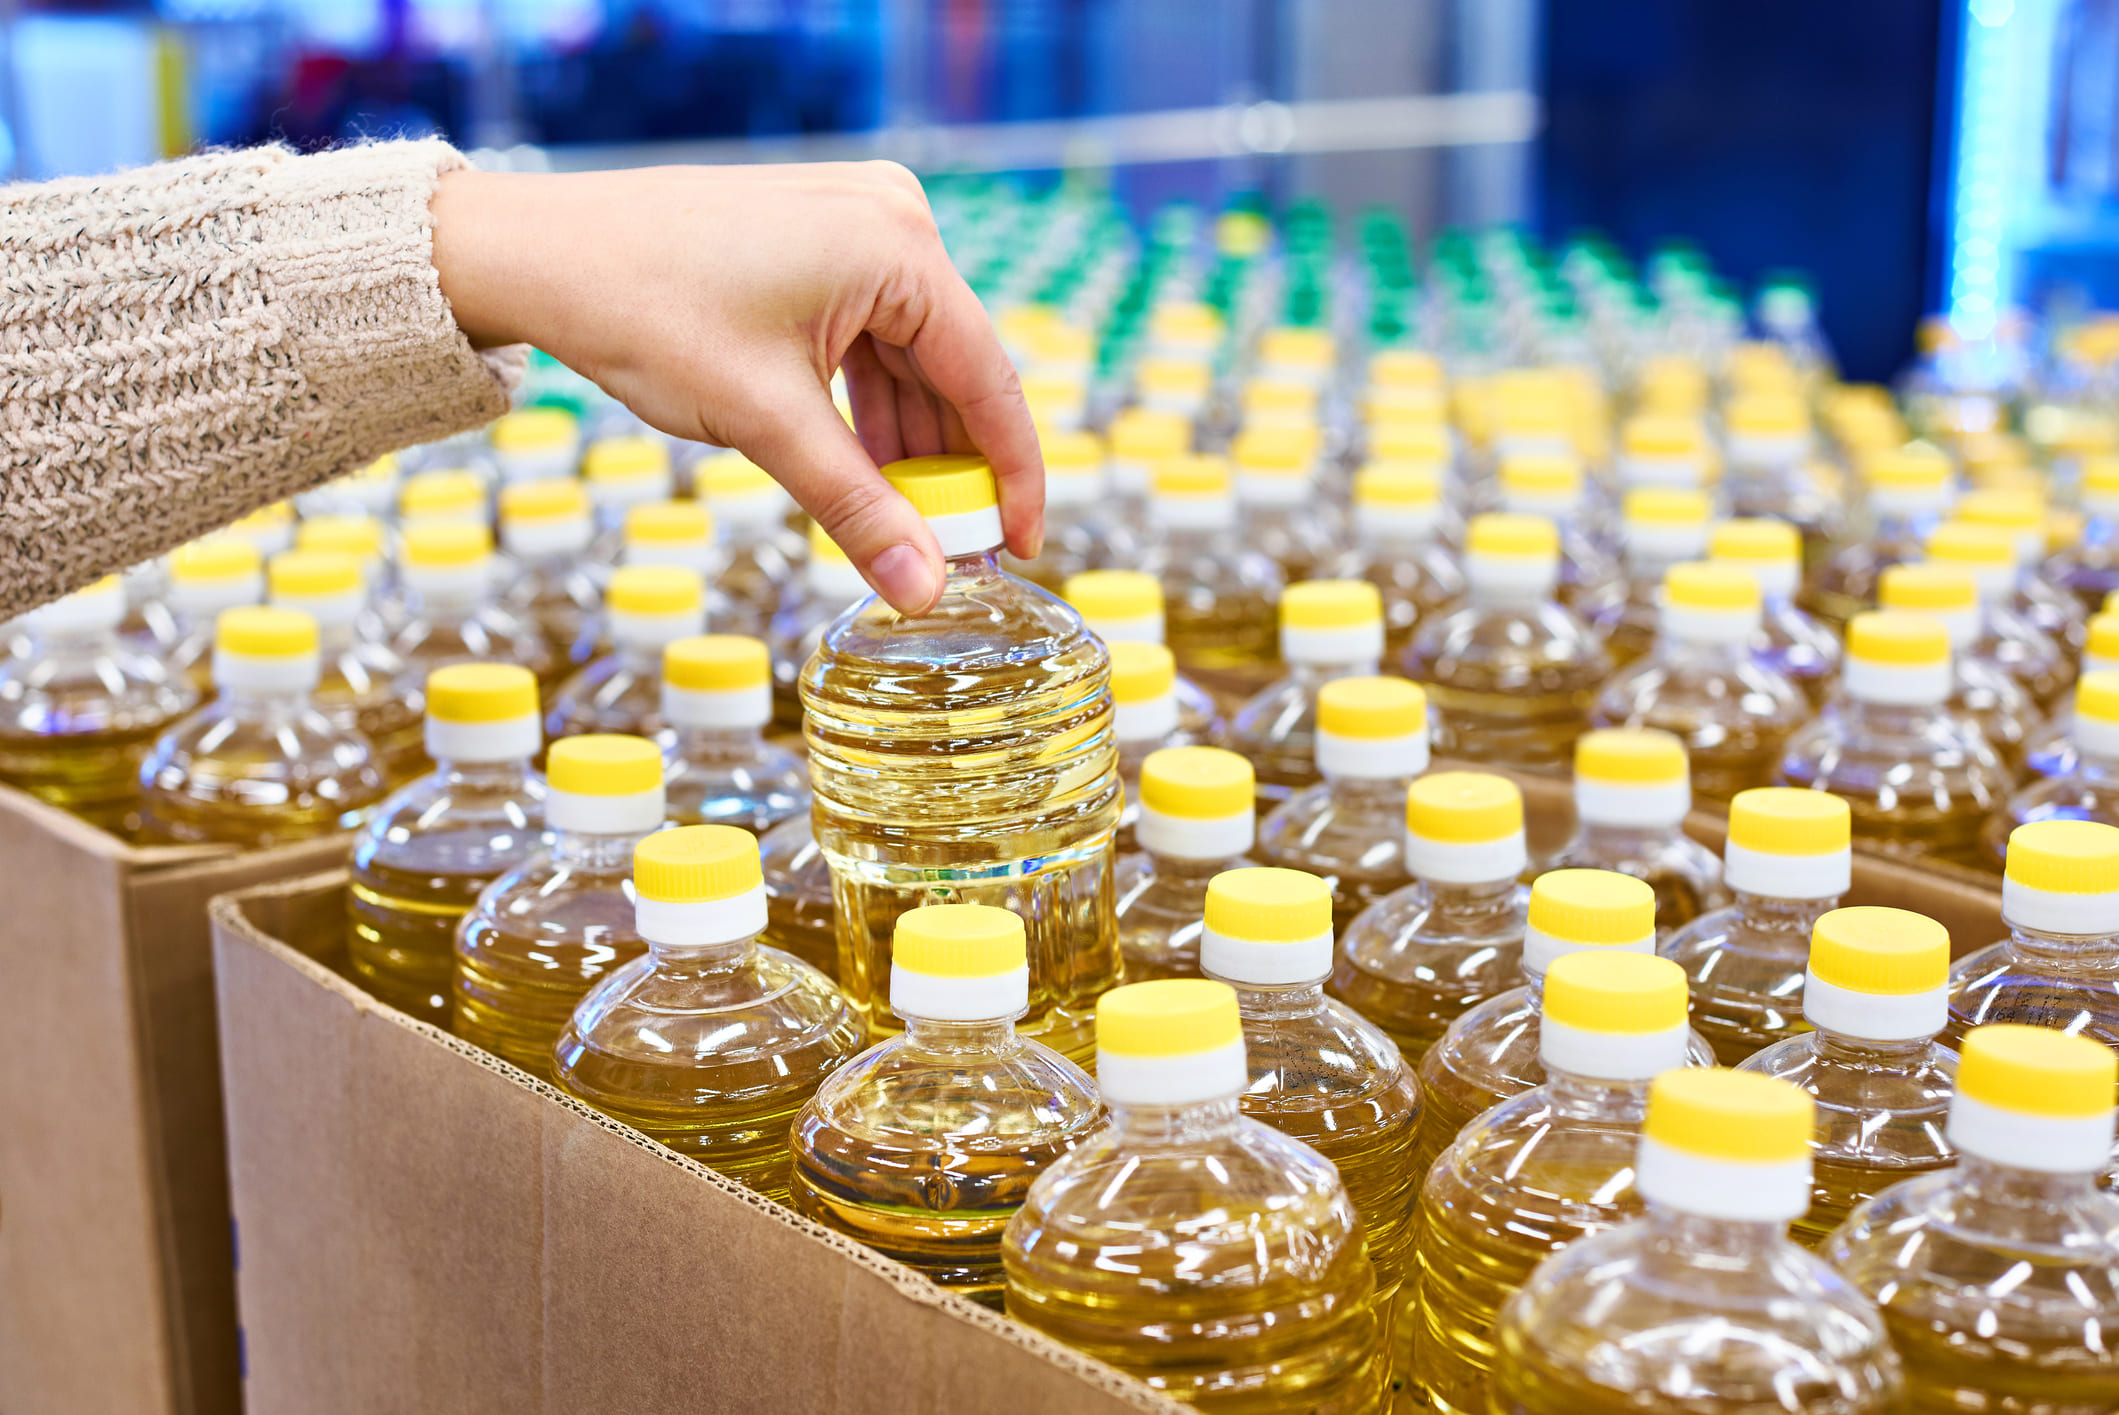  С сентября в магазинах Российской Федерации вводятся ограничения на продажу растительного масла  